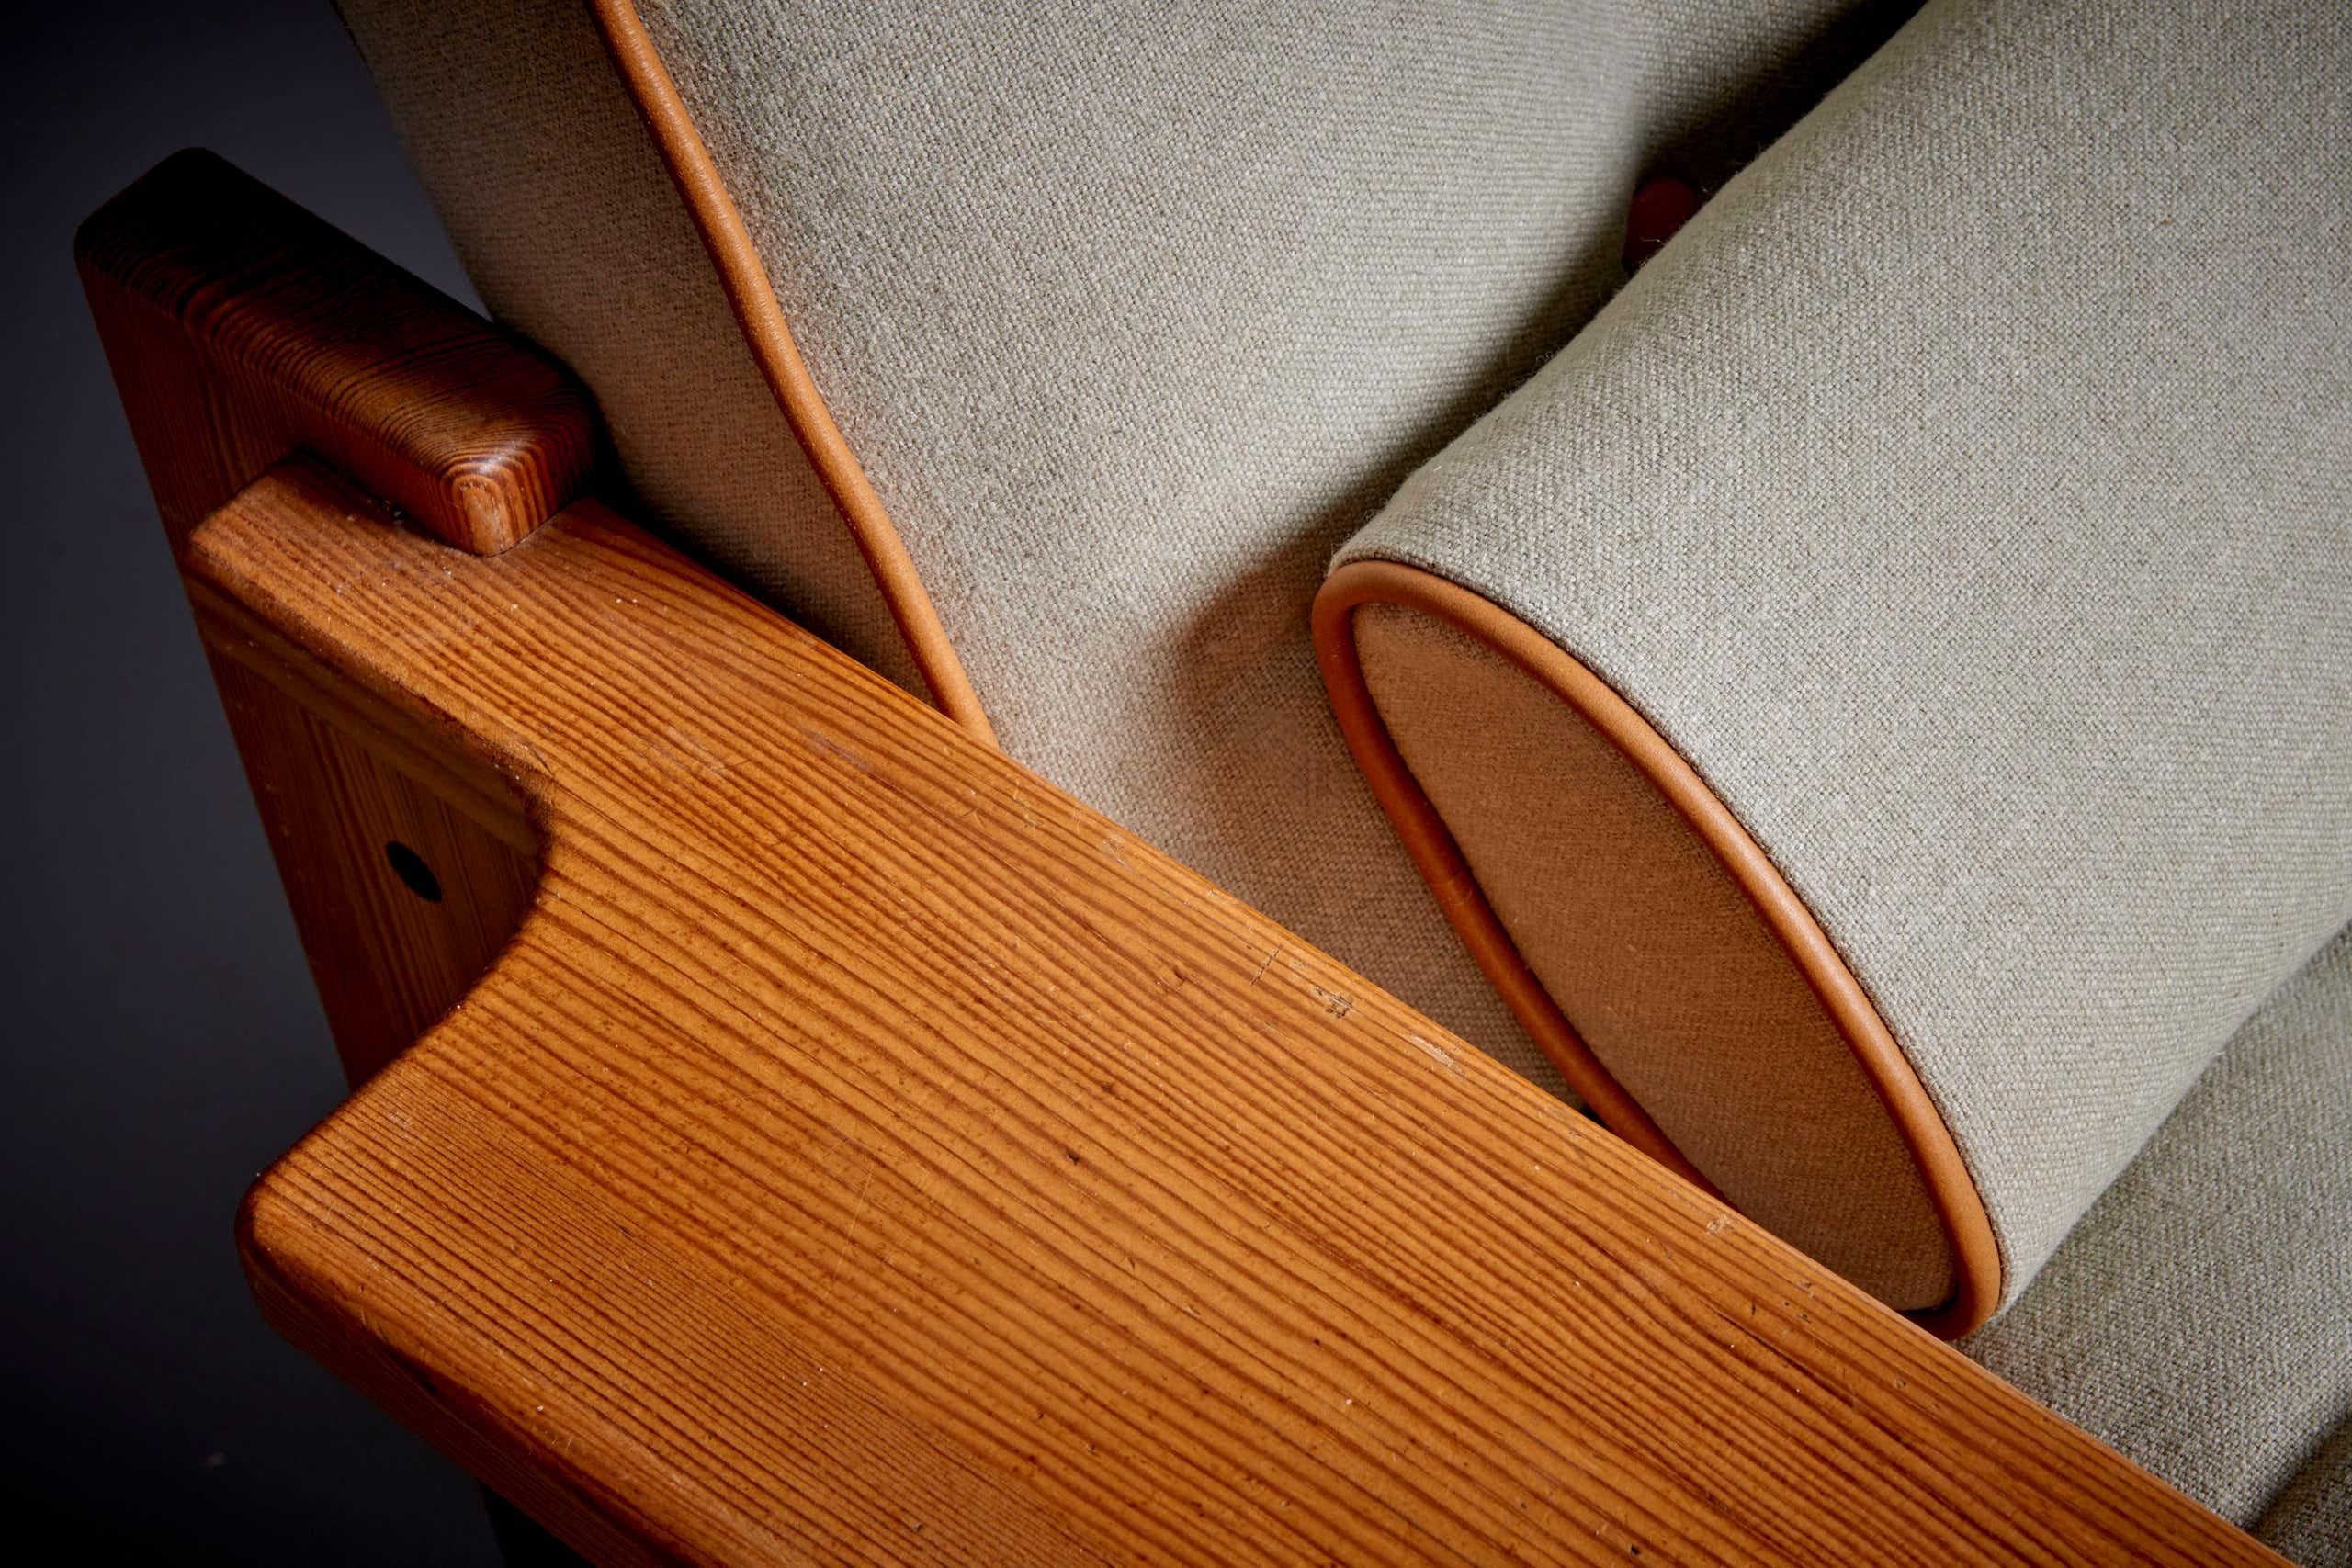 Paar Yngve Ekström Lounge Chairs für Swedese, 1960er Jahre
Wir haben die Sitze mit einem Daunenkissen auf Kaltschaumstoff neu bezogen und mit Lederkeder und Lederknöpfen versehen.
Das Holz ist eine klare Kiefer mit einer schönen Patina.